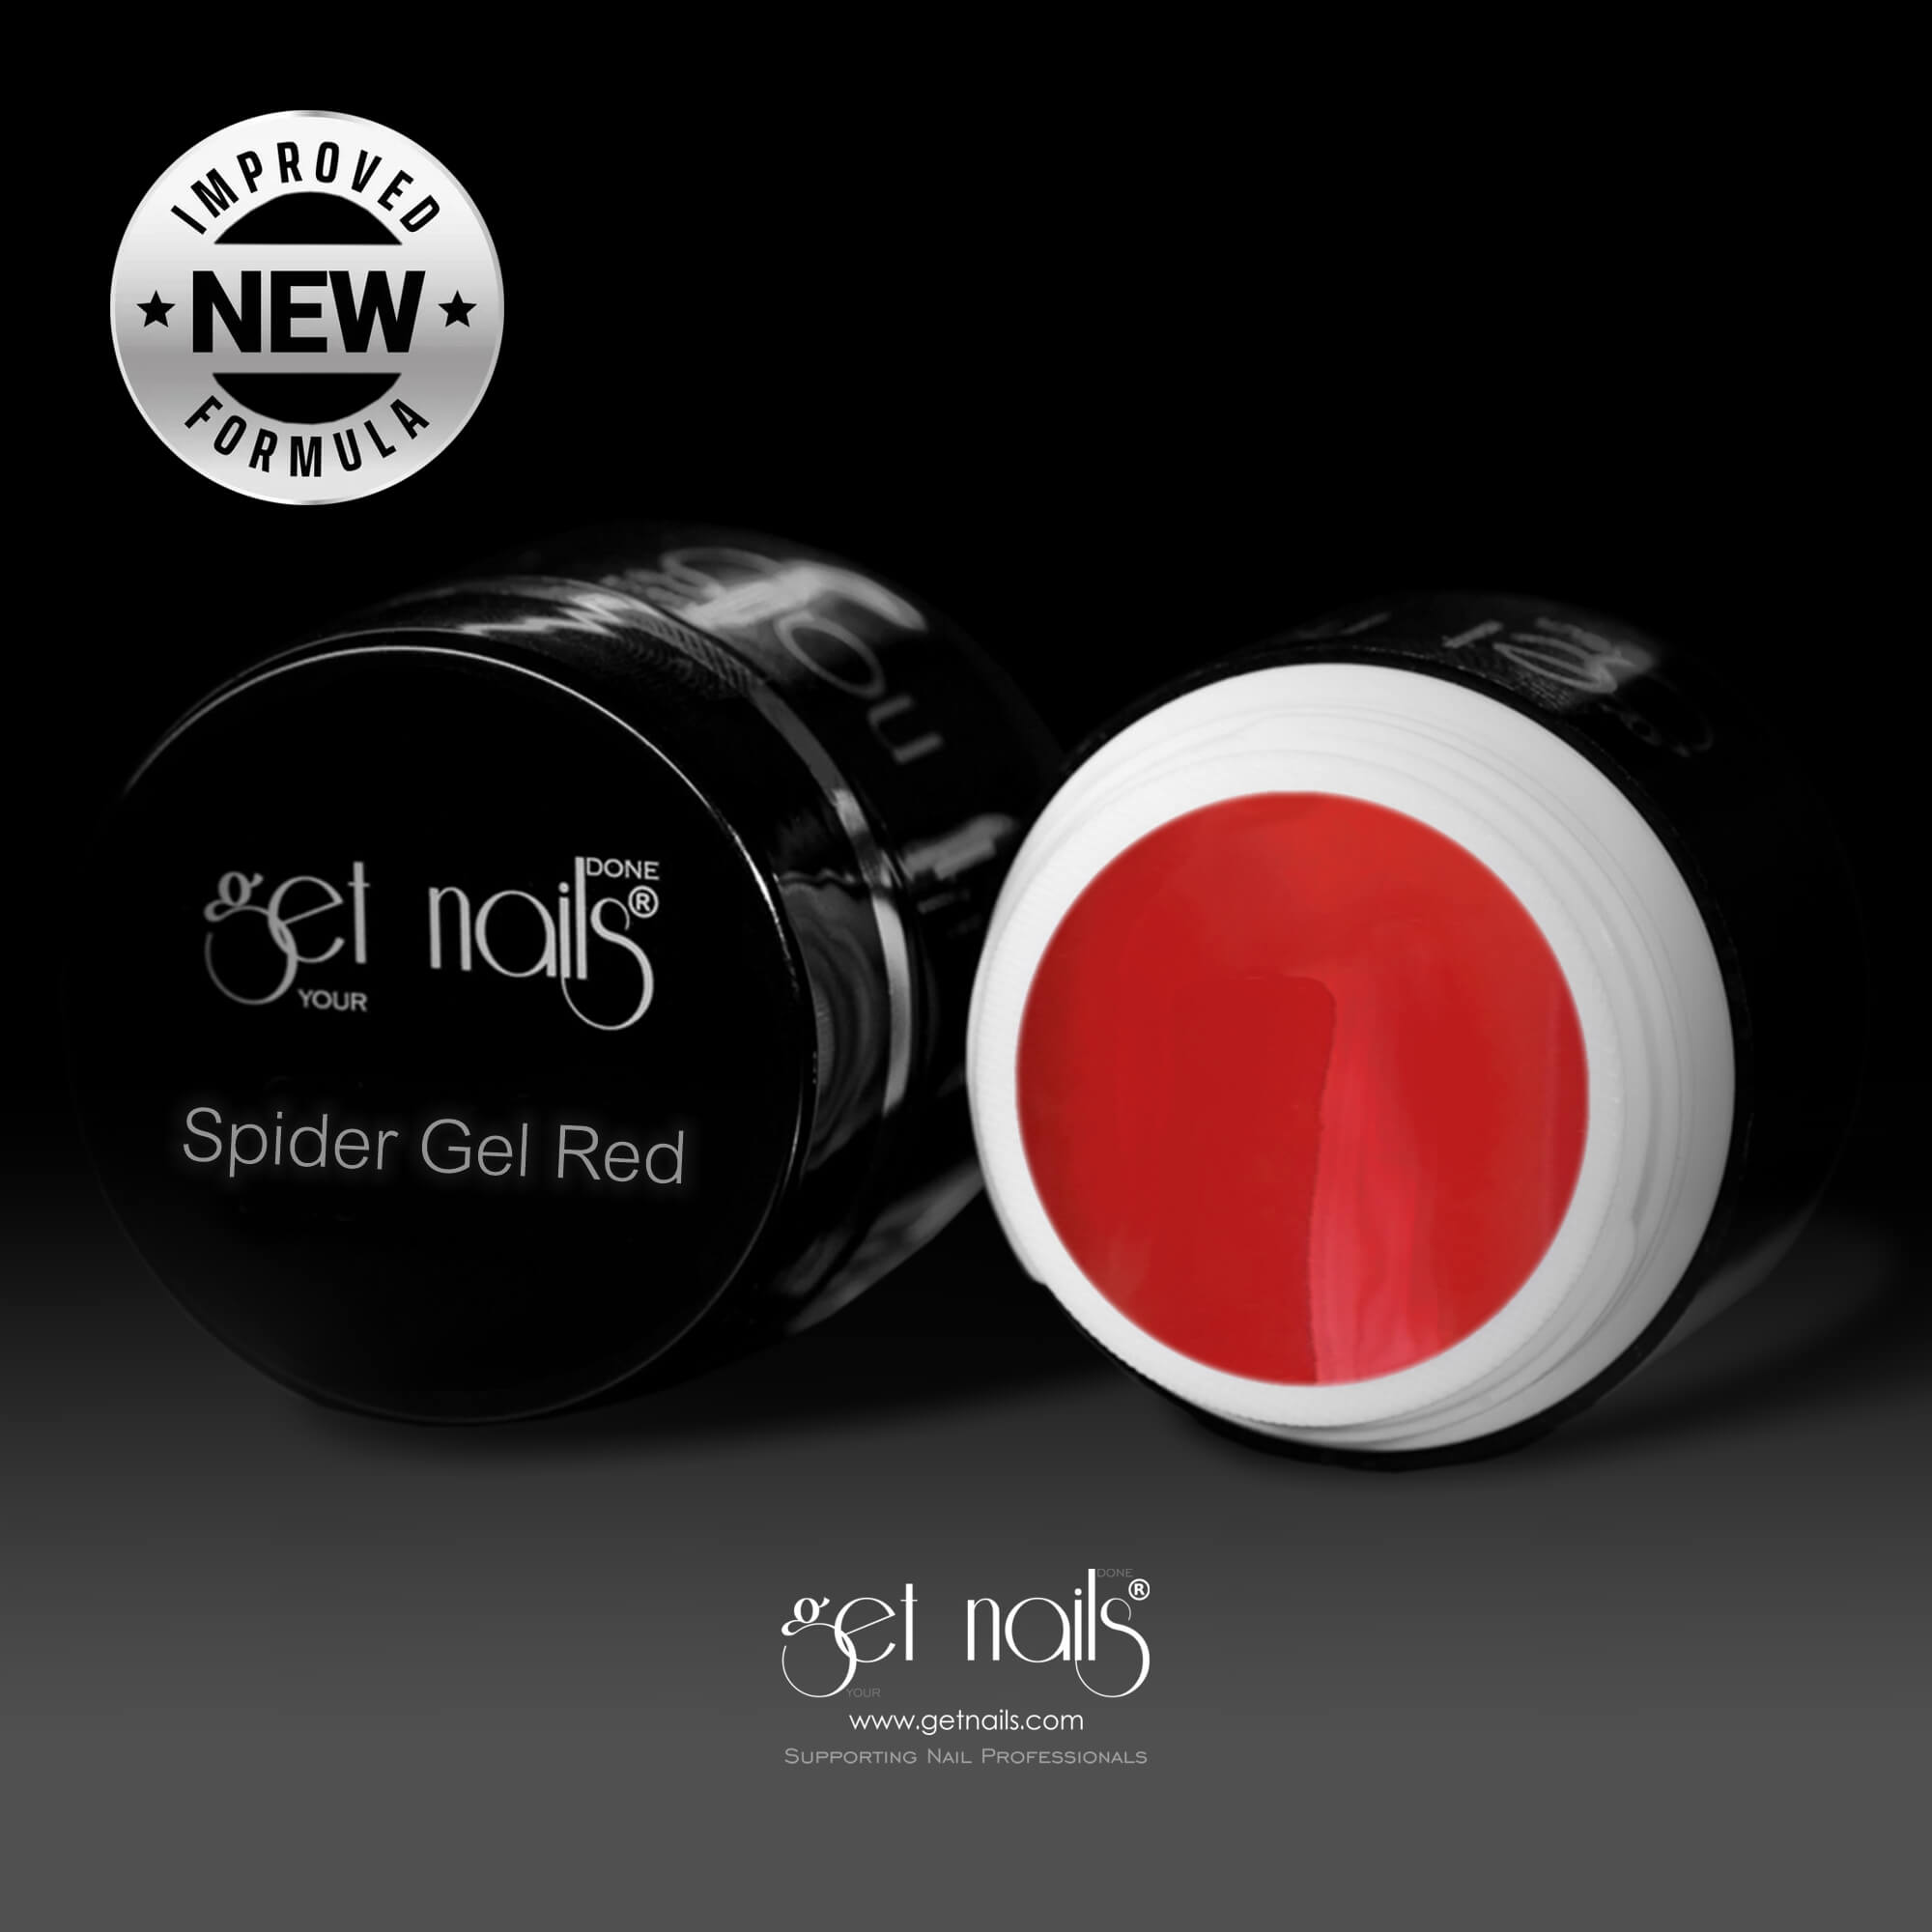 Get Nails Austria - Гель-паук красный 5g